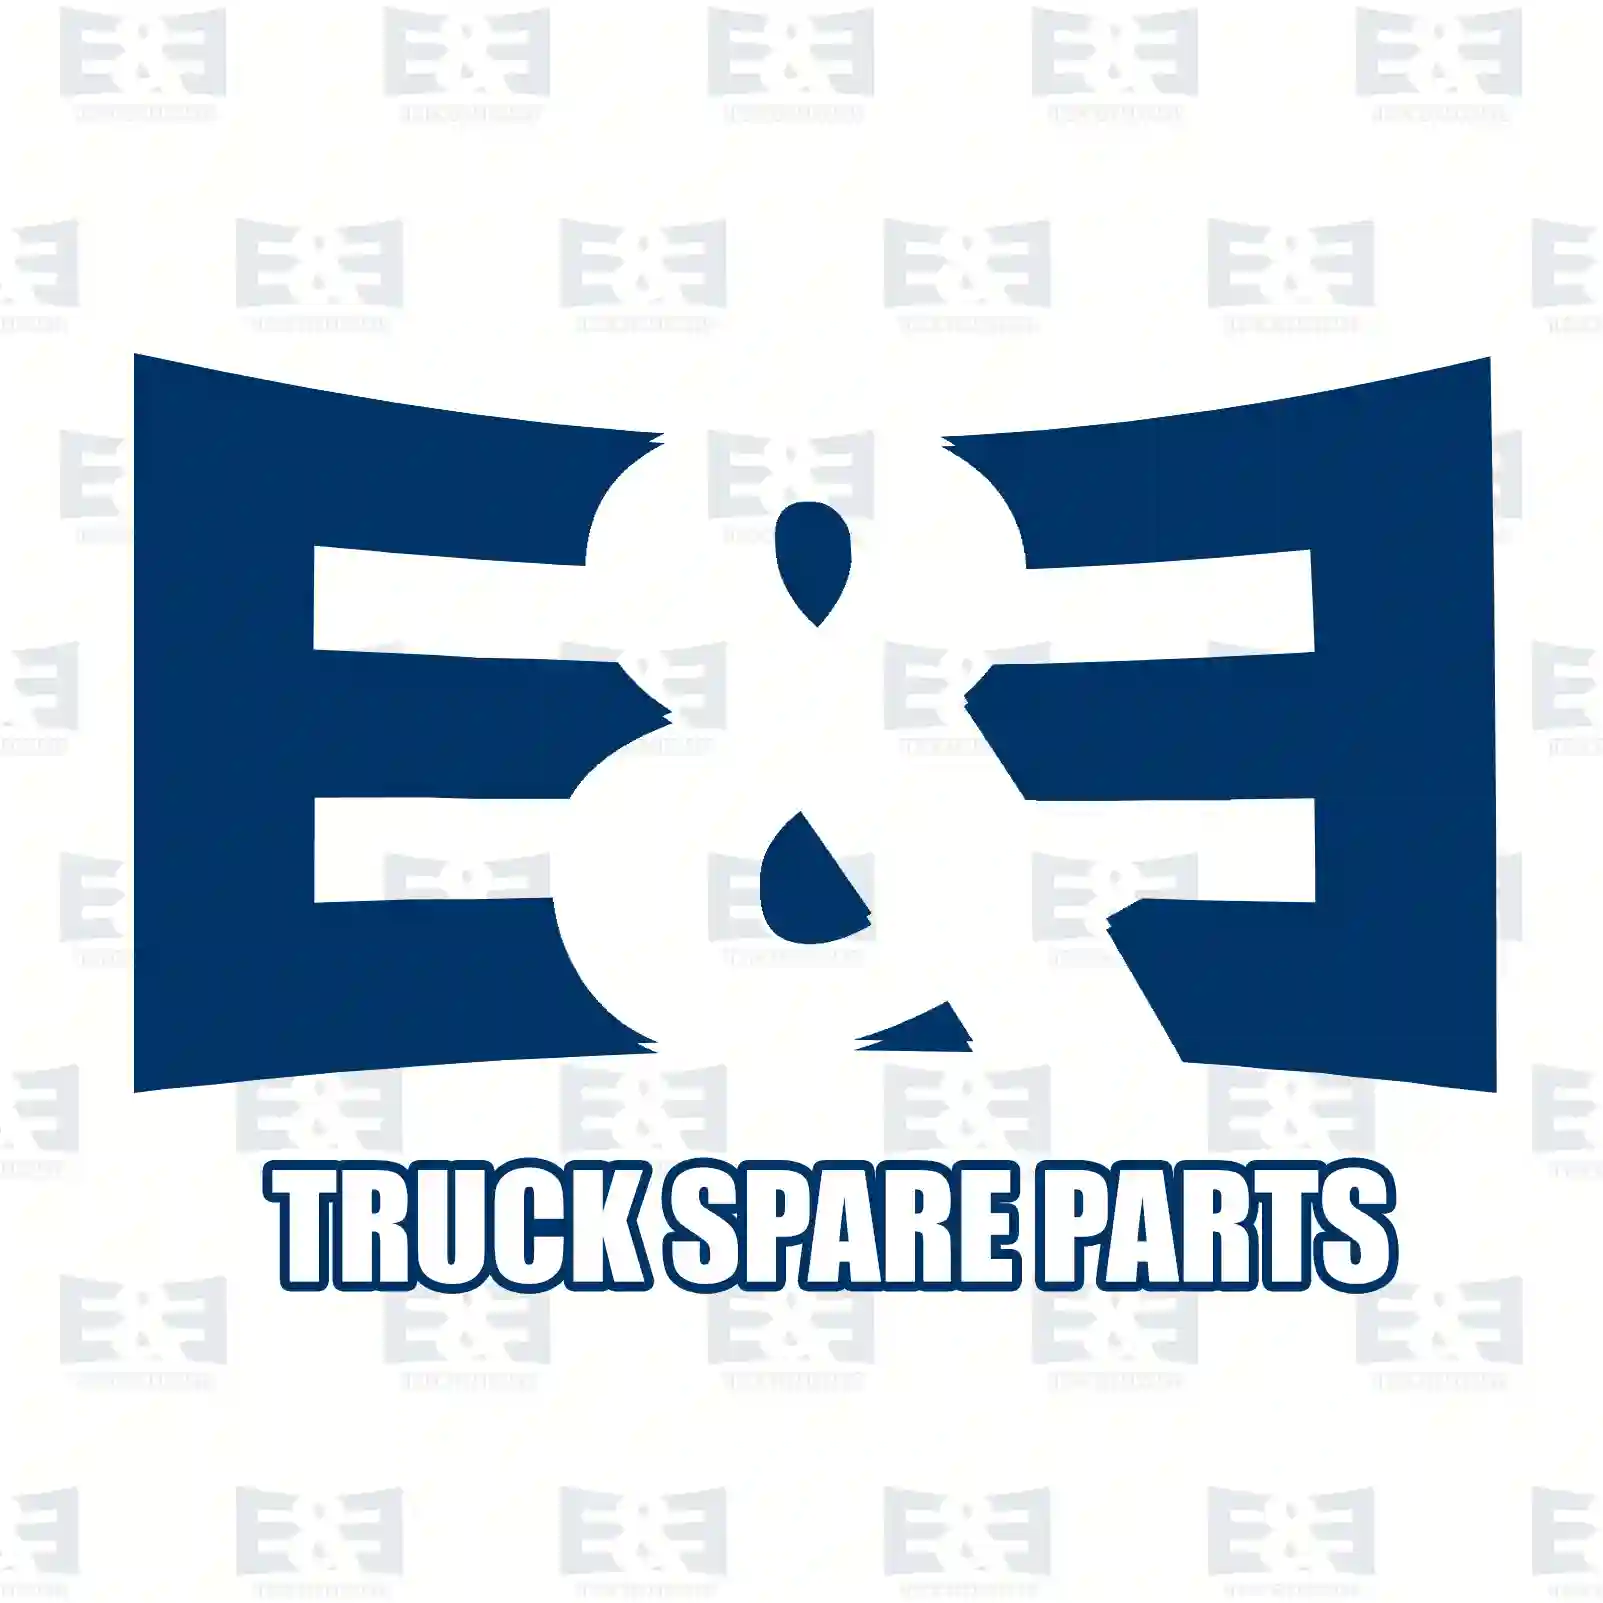 Gear shift lever, 2E2278988, 20476049, ZG30543-0008 ||  2E2278988 E&E Truck Spare Parts | Truck Spare Parts, Auotomotive Spare Parts Gear shift lever, 2E2278988, 20476049, ZG30543-0008 ||  2E2278988 E&E Truck Spare Parts | Truck Spare Parts, Auotomotive Spare Parts